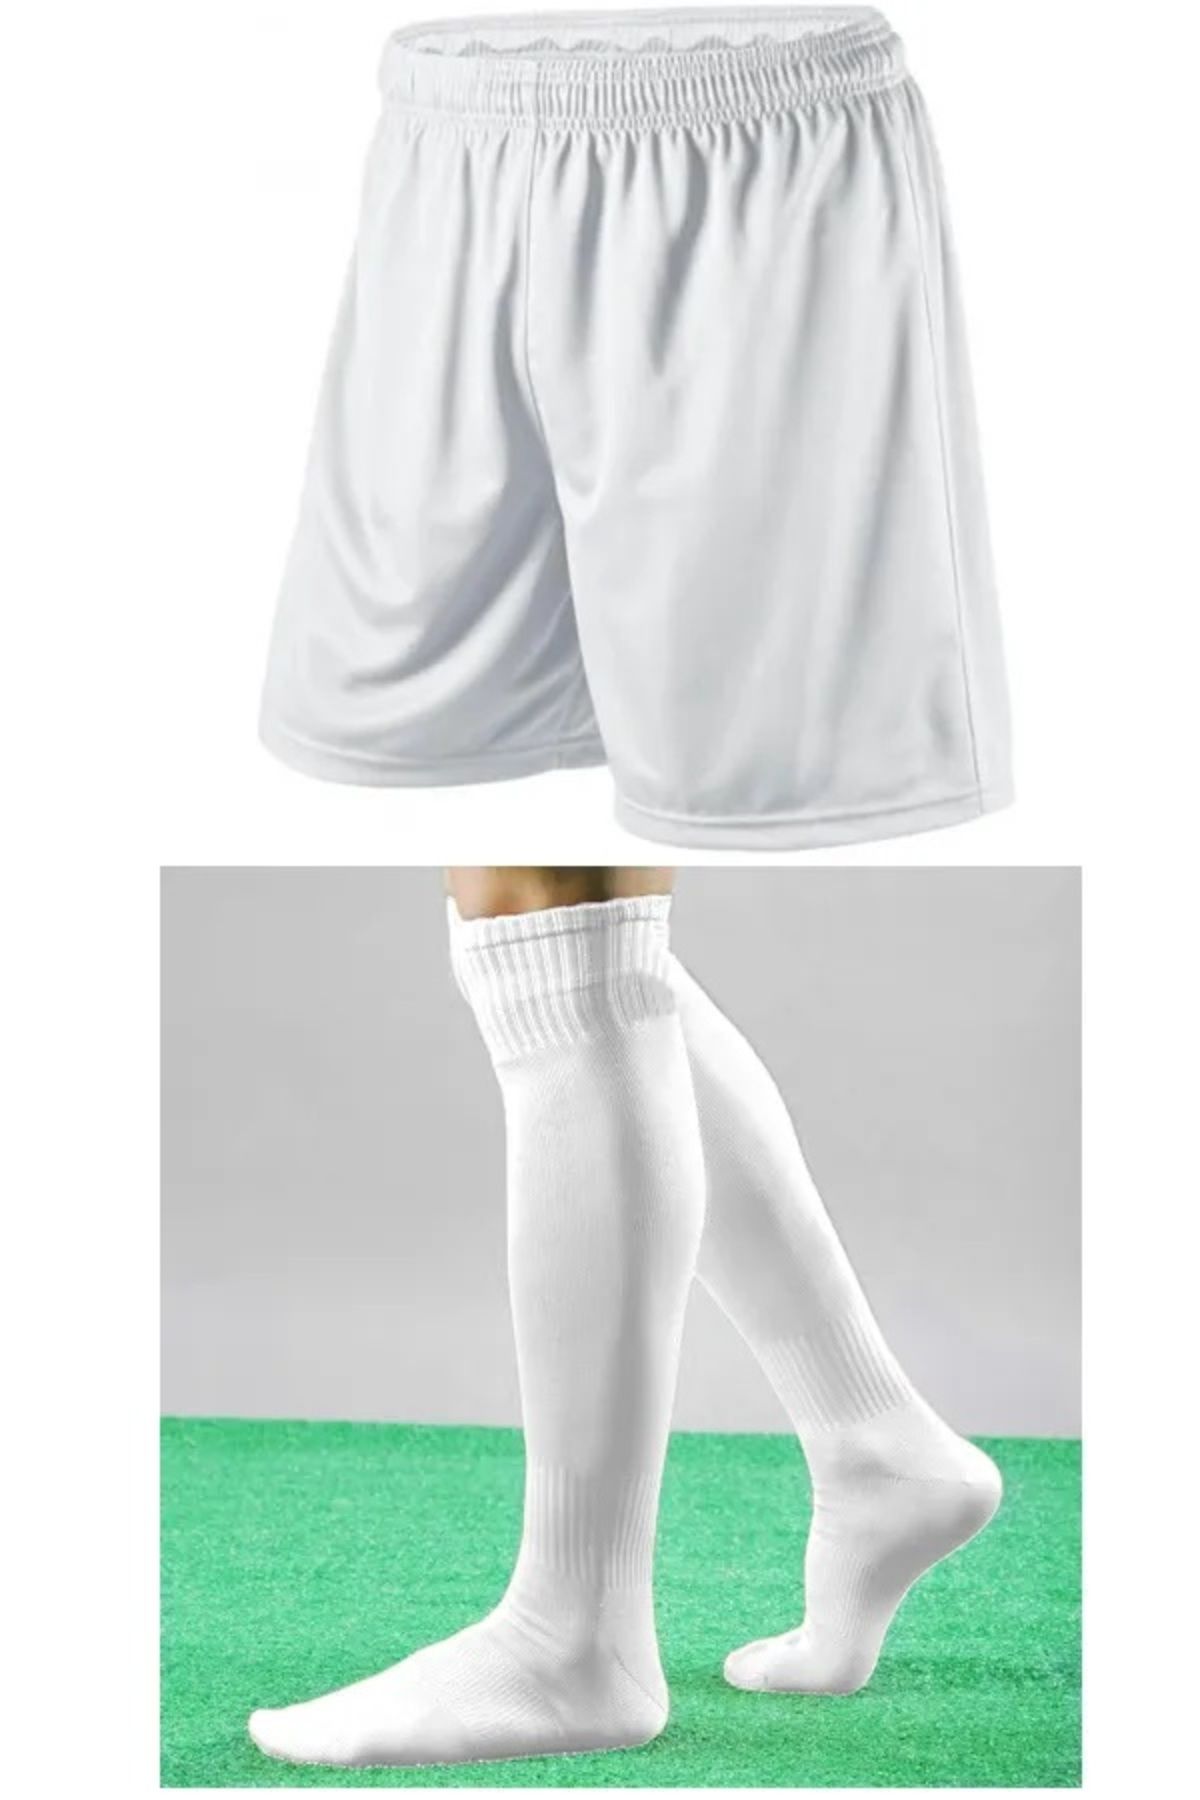 PROTHOON Futbol Şortu Ve Futbol Çorabı Seti Sporcu